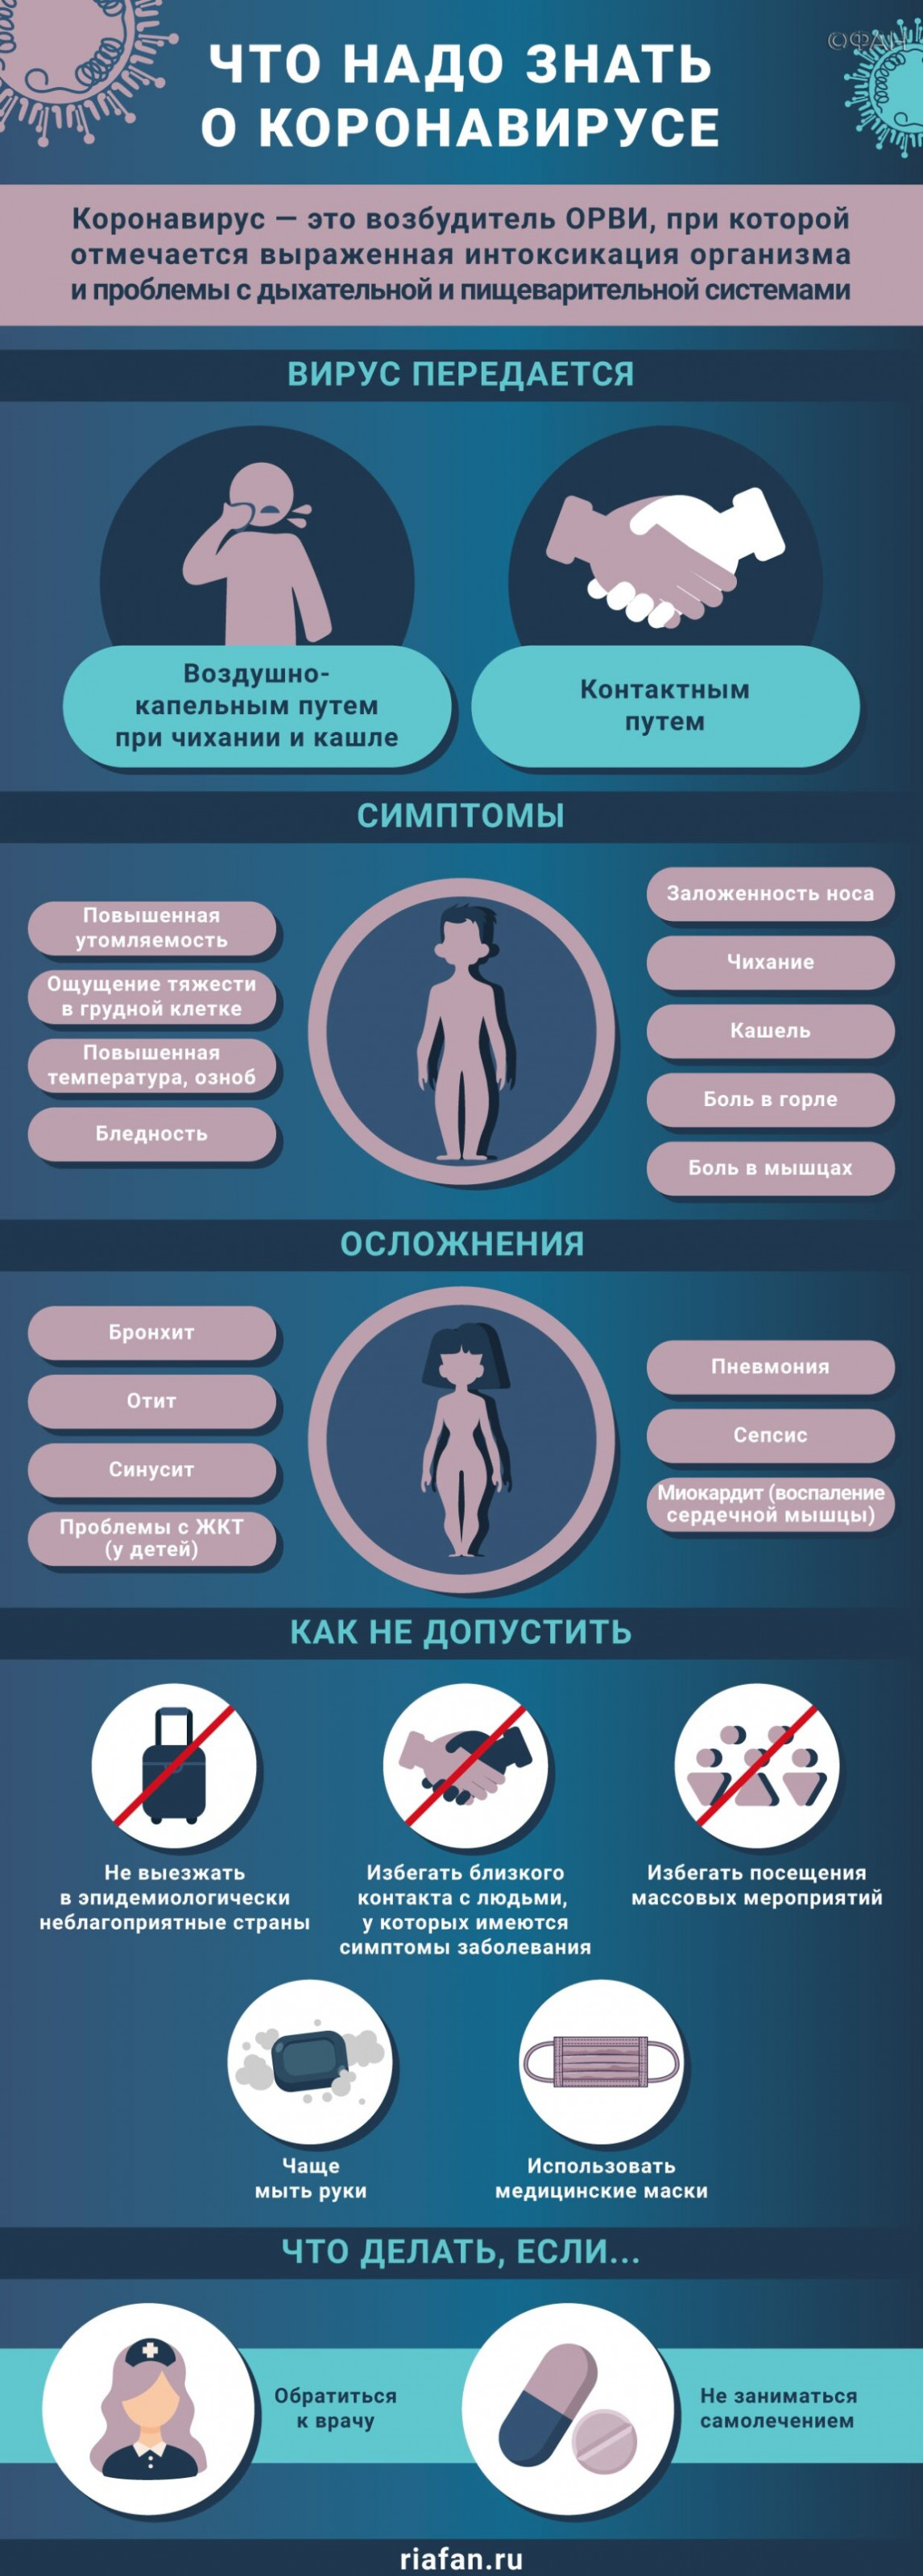 В Ростовской области увеличилось число случаев коронавируса